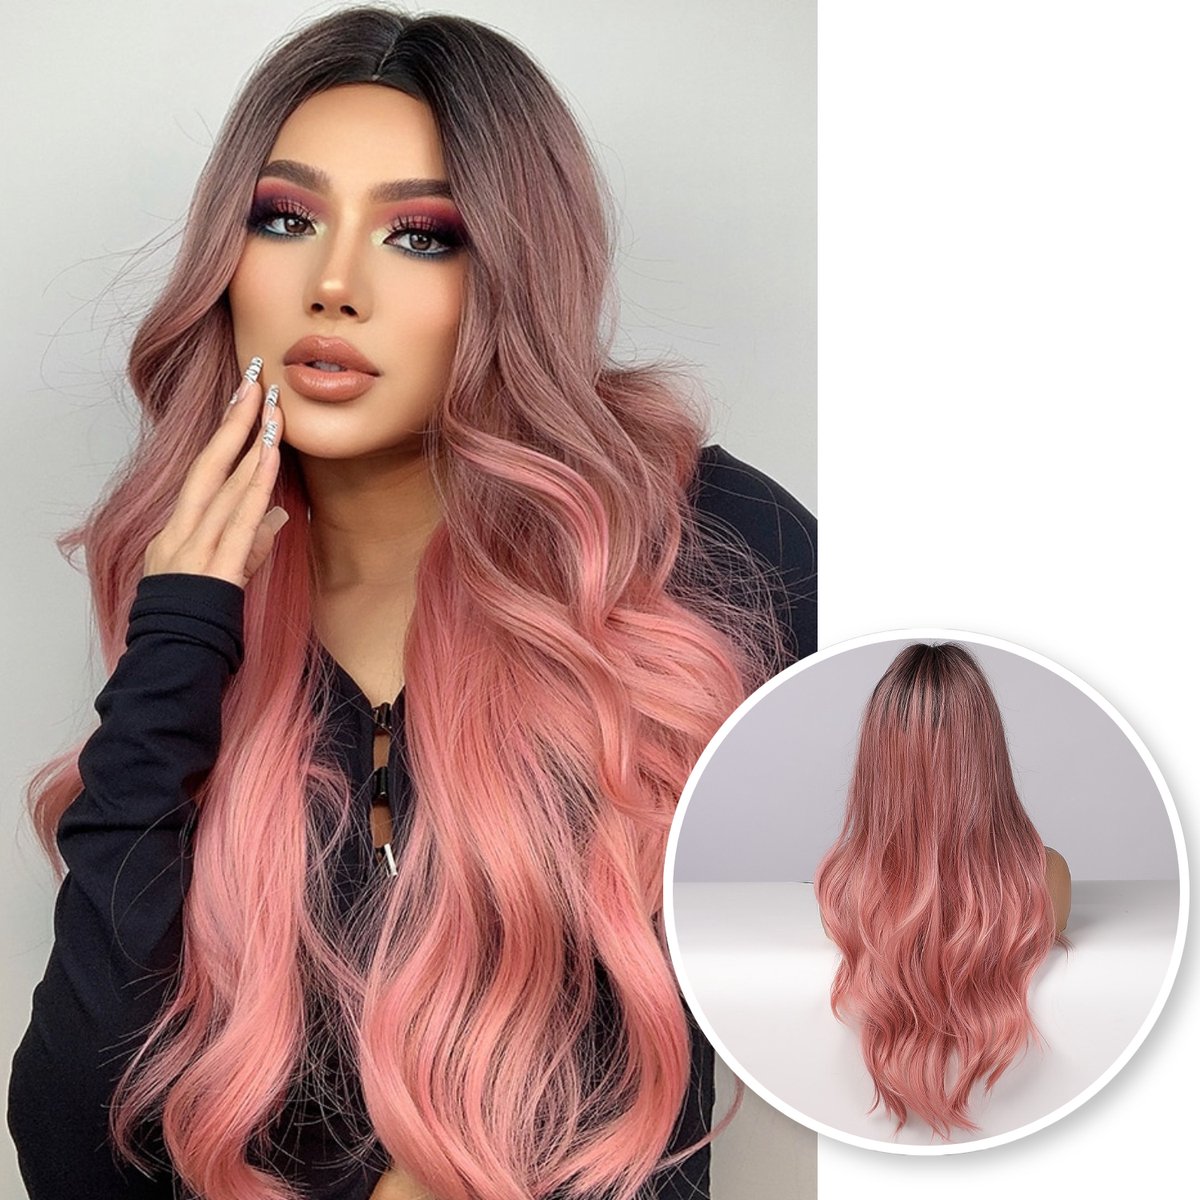 SassyGoods® Roze Pruik - Pruiken Dames Lang Haar - Wig - Hoge Kwaliteit - Wasbaar - 70 cm - SassyGoods